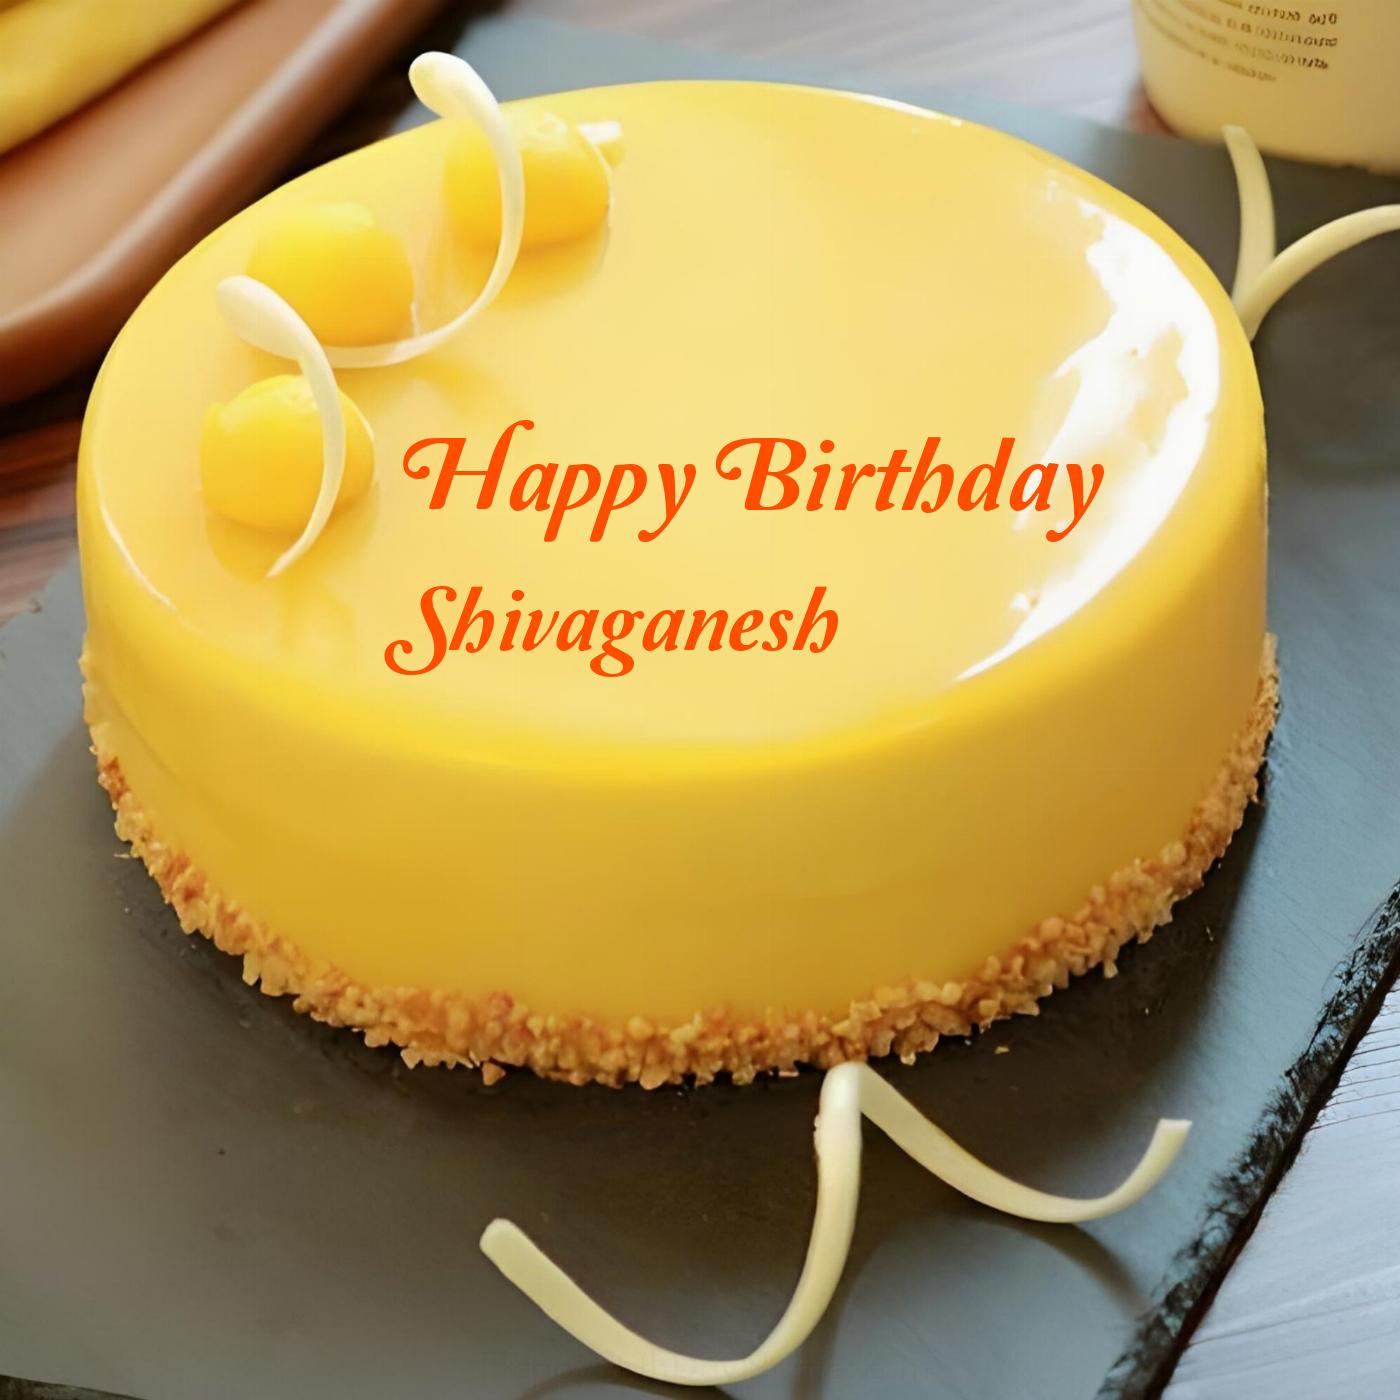 Happy Birthday Shivaganesh Beautiful Yellow Cake